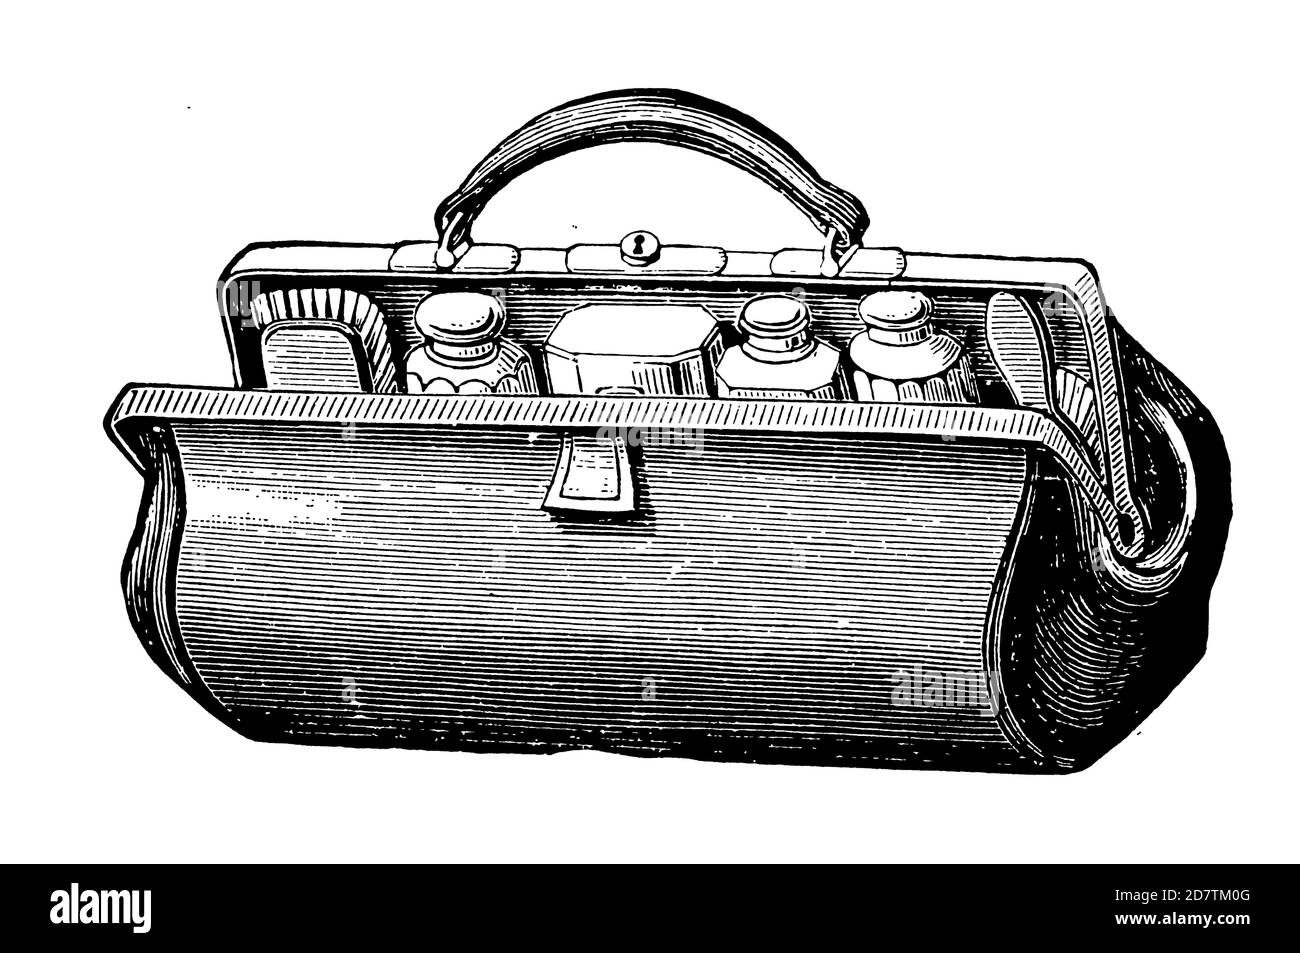 Vintage Travel Suitcase - Original Antique 19. Century Tourism Advertising Design Schwarz-Weiß-Illustrationen von Reisezubehör und Taschen Stockfoto